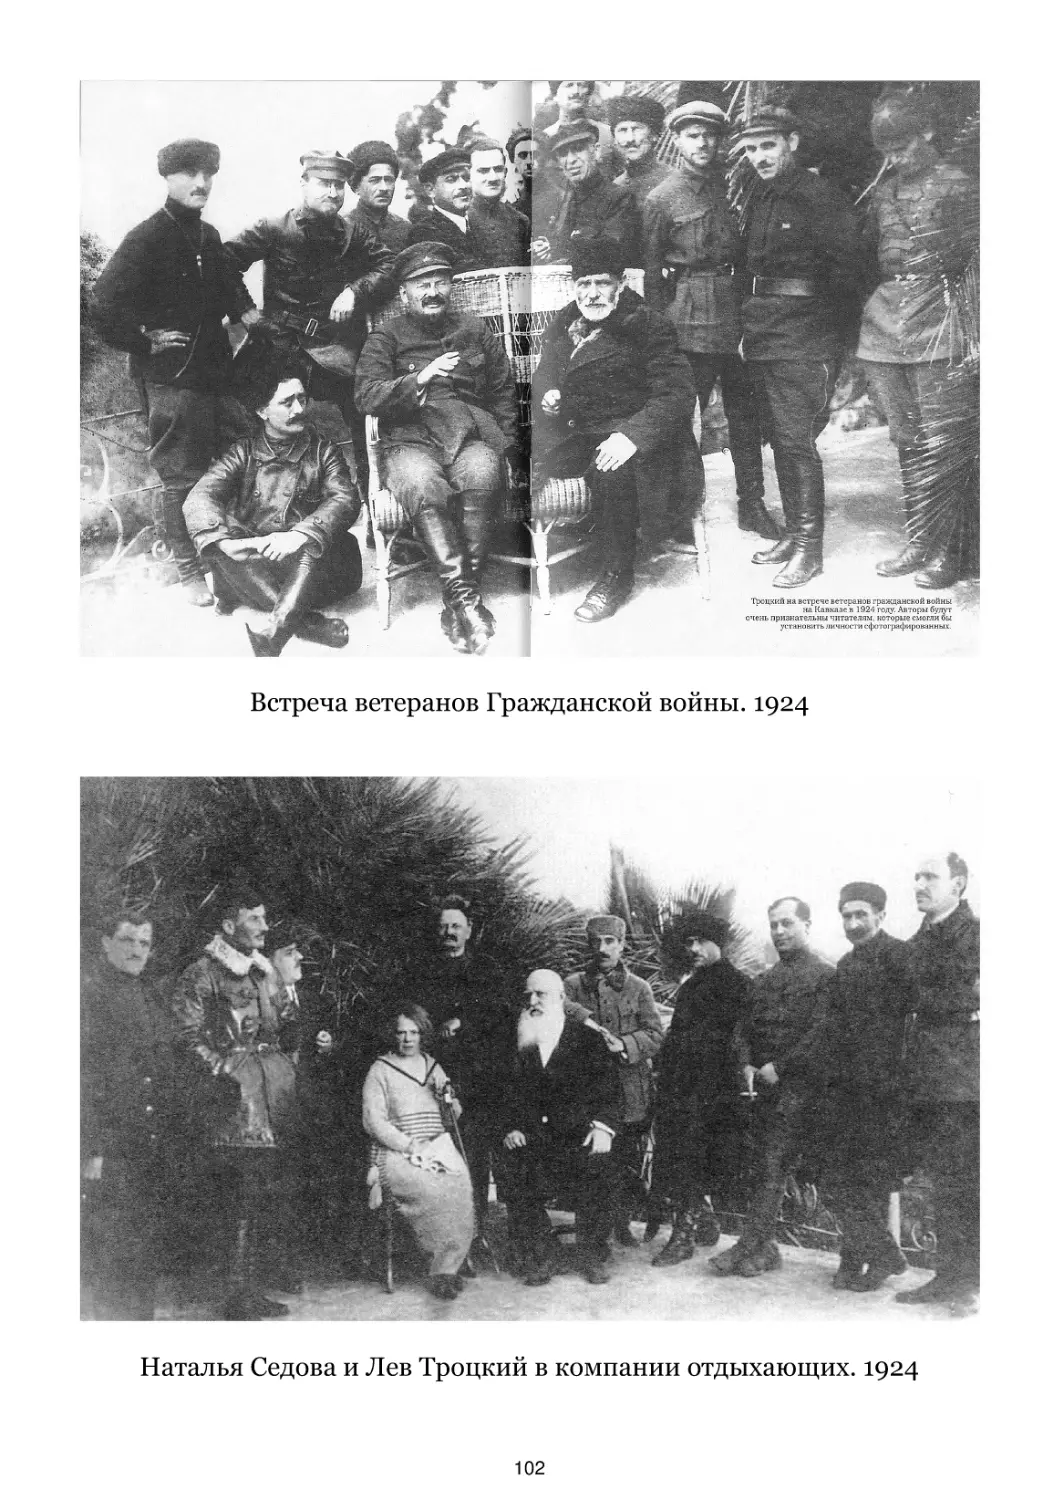 Встреча ветеранов Гражданской войны. 1924
Наталья Седова и Лев Троцкий в компании отдыхающих. 1924